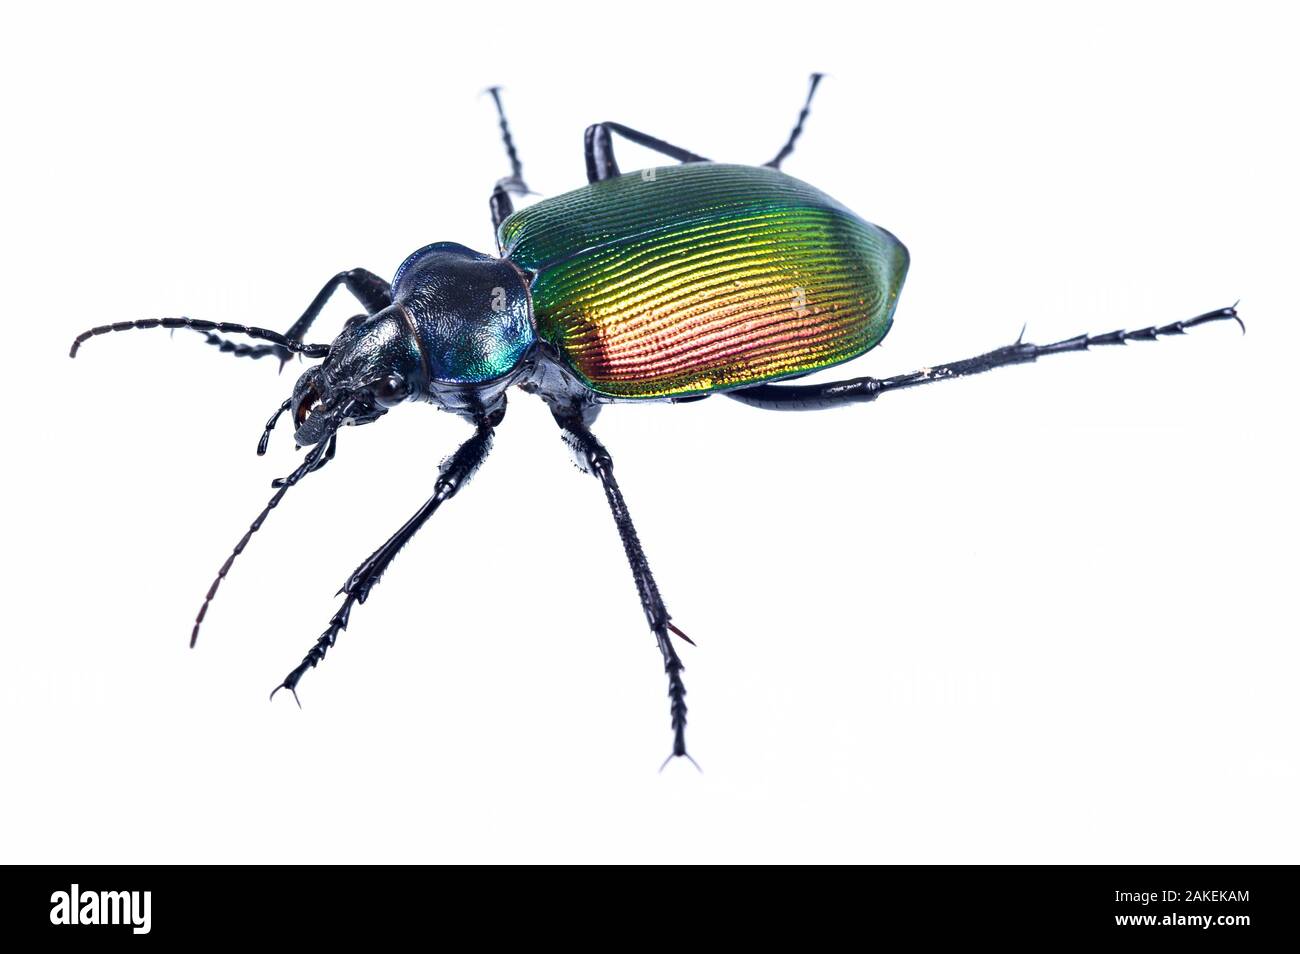 Carabid beetle (Calosoma sycophanta) on white backlit background, Antola Regional Park, Italy Stock Photo